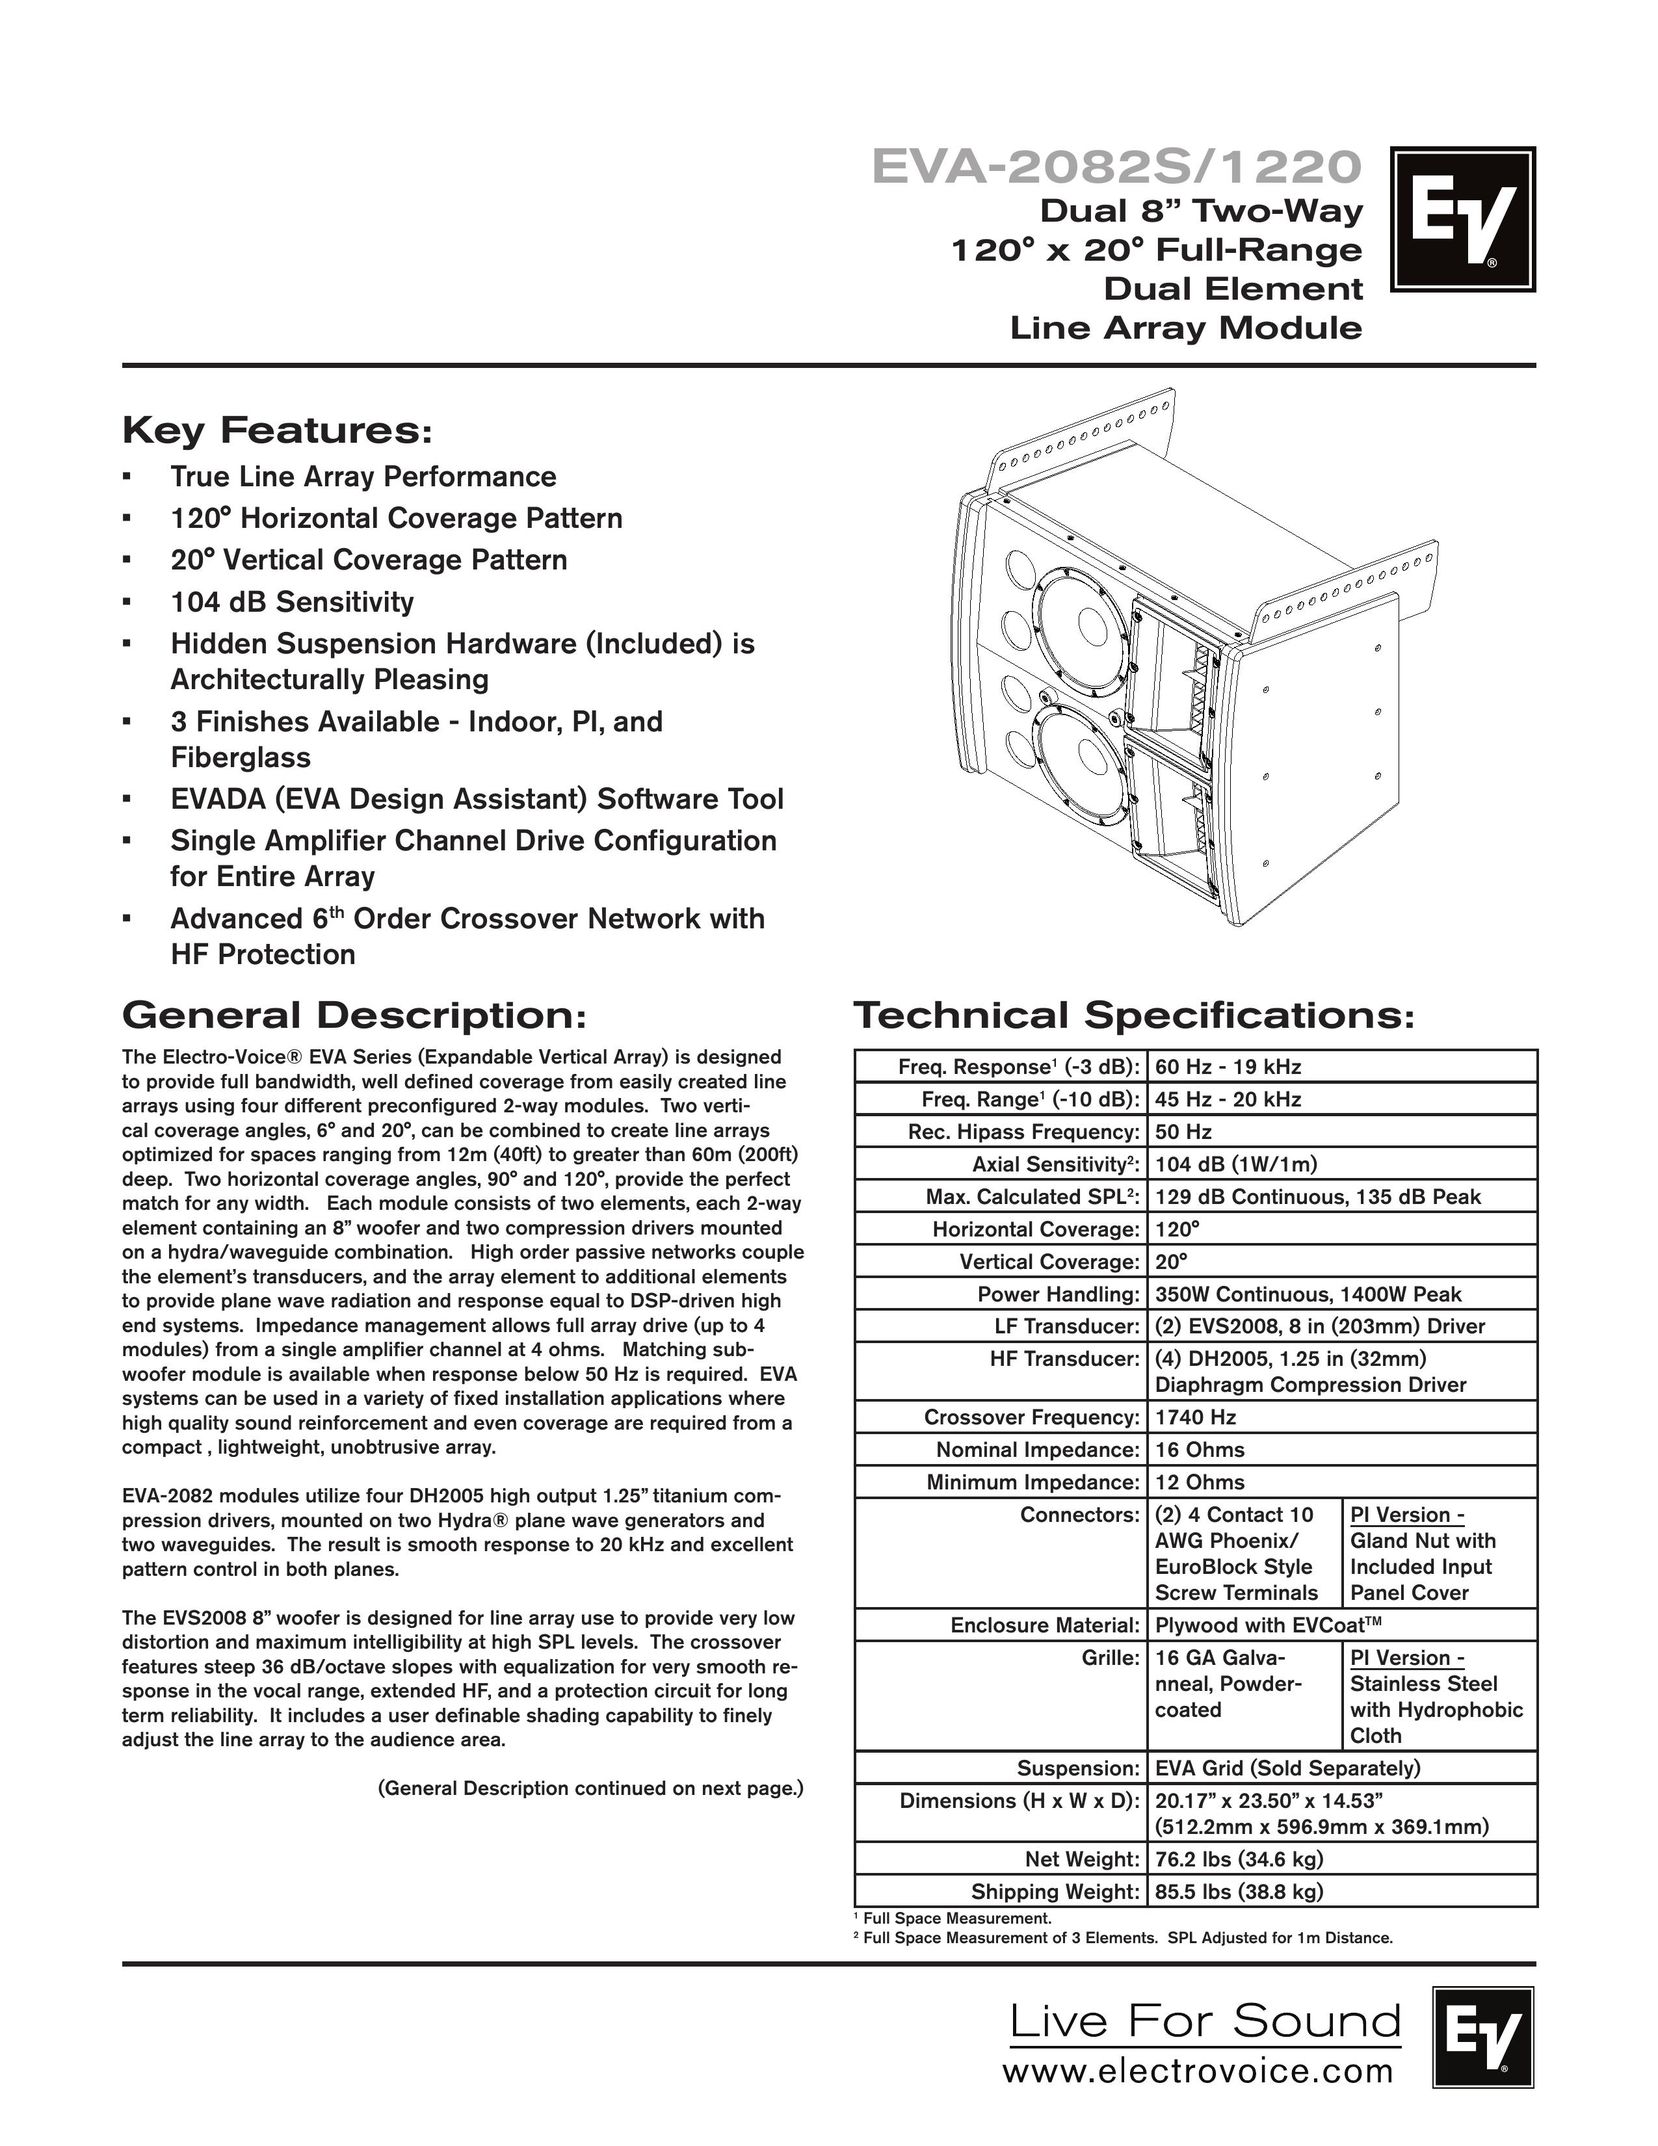 Electro-Voice EVA-2082S/1220 Speaker User Manual